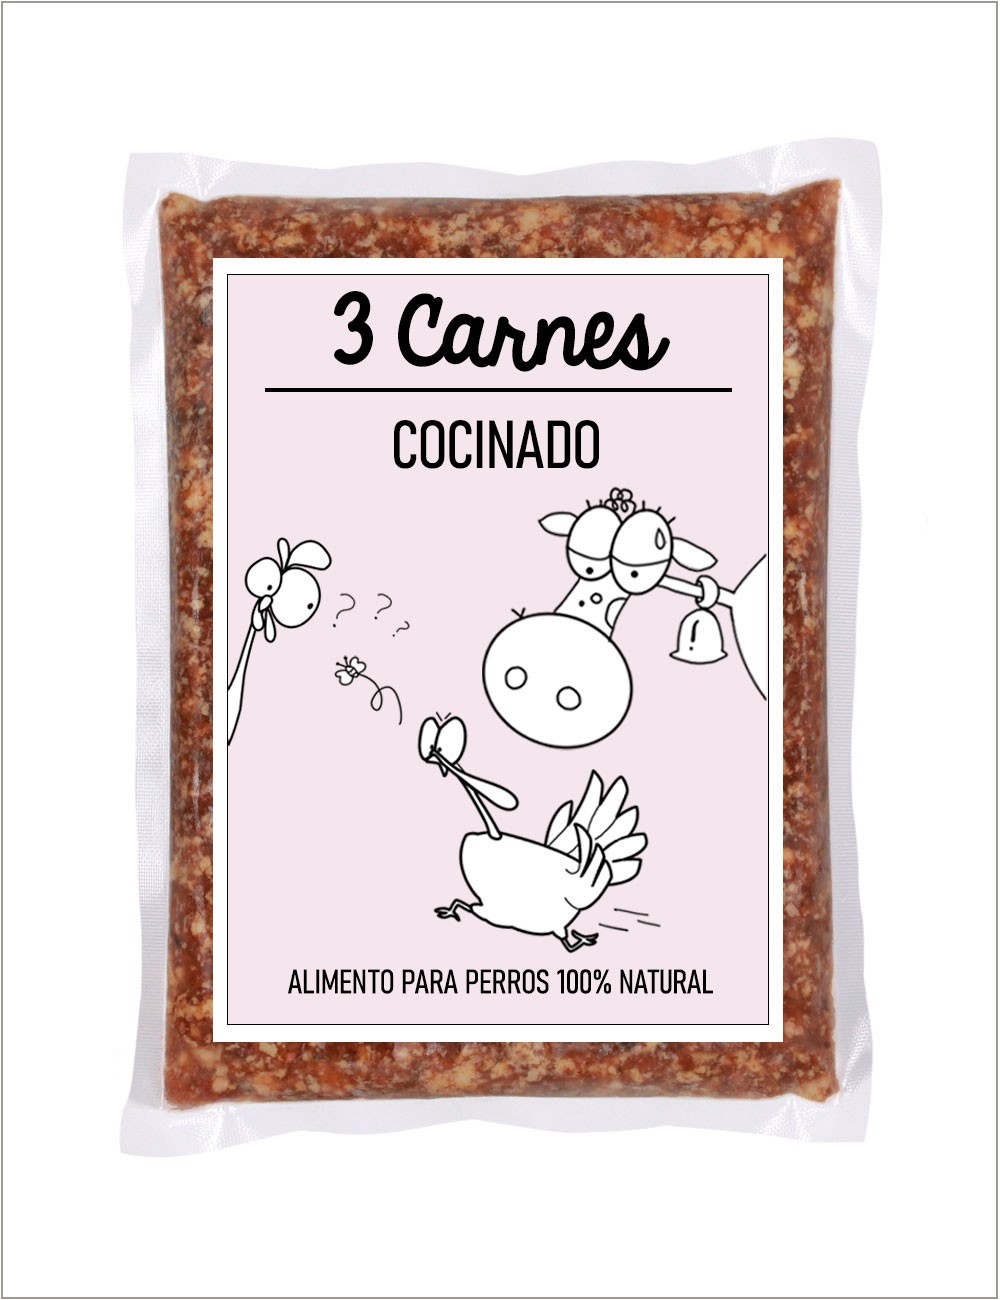 3 Carnes COCINADO GUAU AND CAT - 1